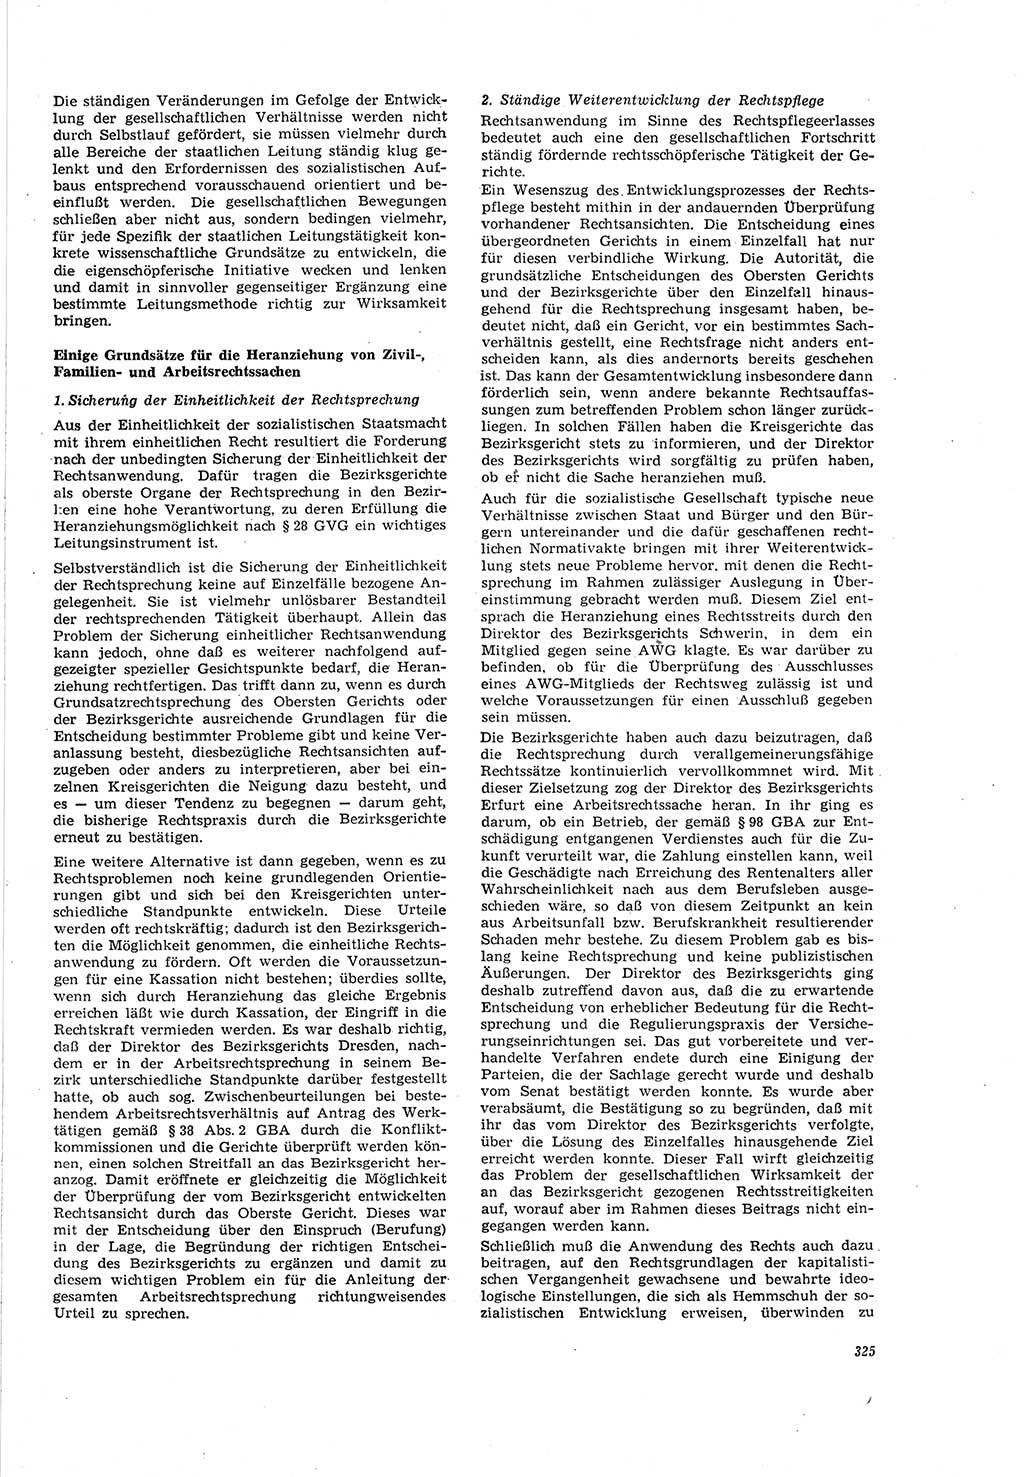 Neue Justiz (NJ), Zeitschrift für Recht und Rechtswissenschaft [Deutsche Demokratische Republik (DDR)], 20. Jahrgang 1966, Seite 325 (NJ DDR 1966, S. 325)